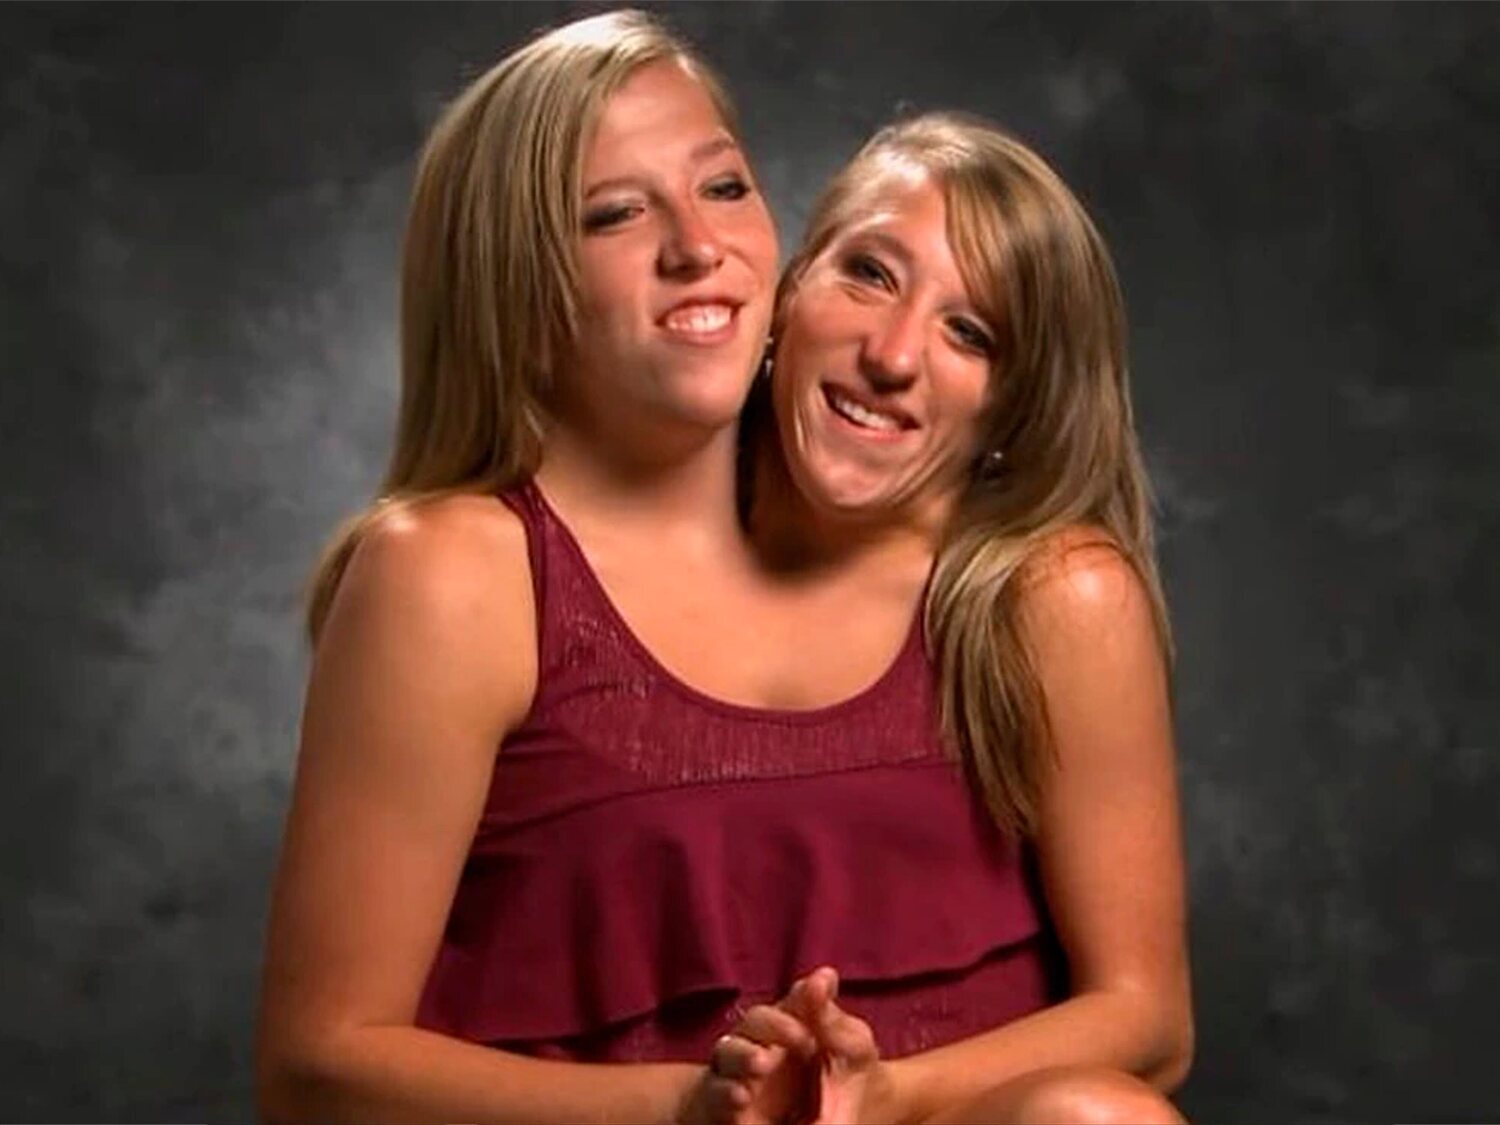 Dos vidas en una: la historia de superación de las siamesas Abby y Brittany Hensel